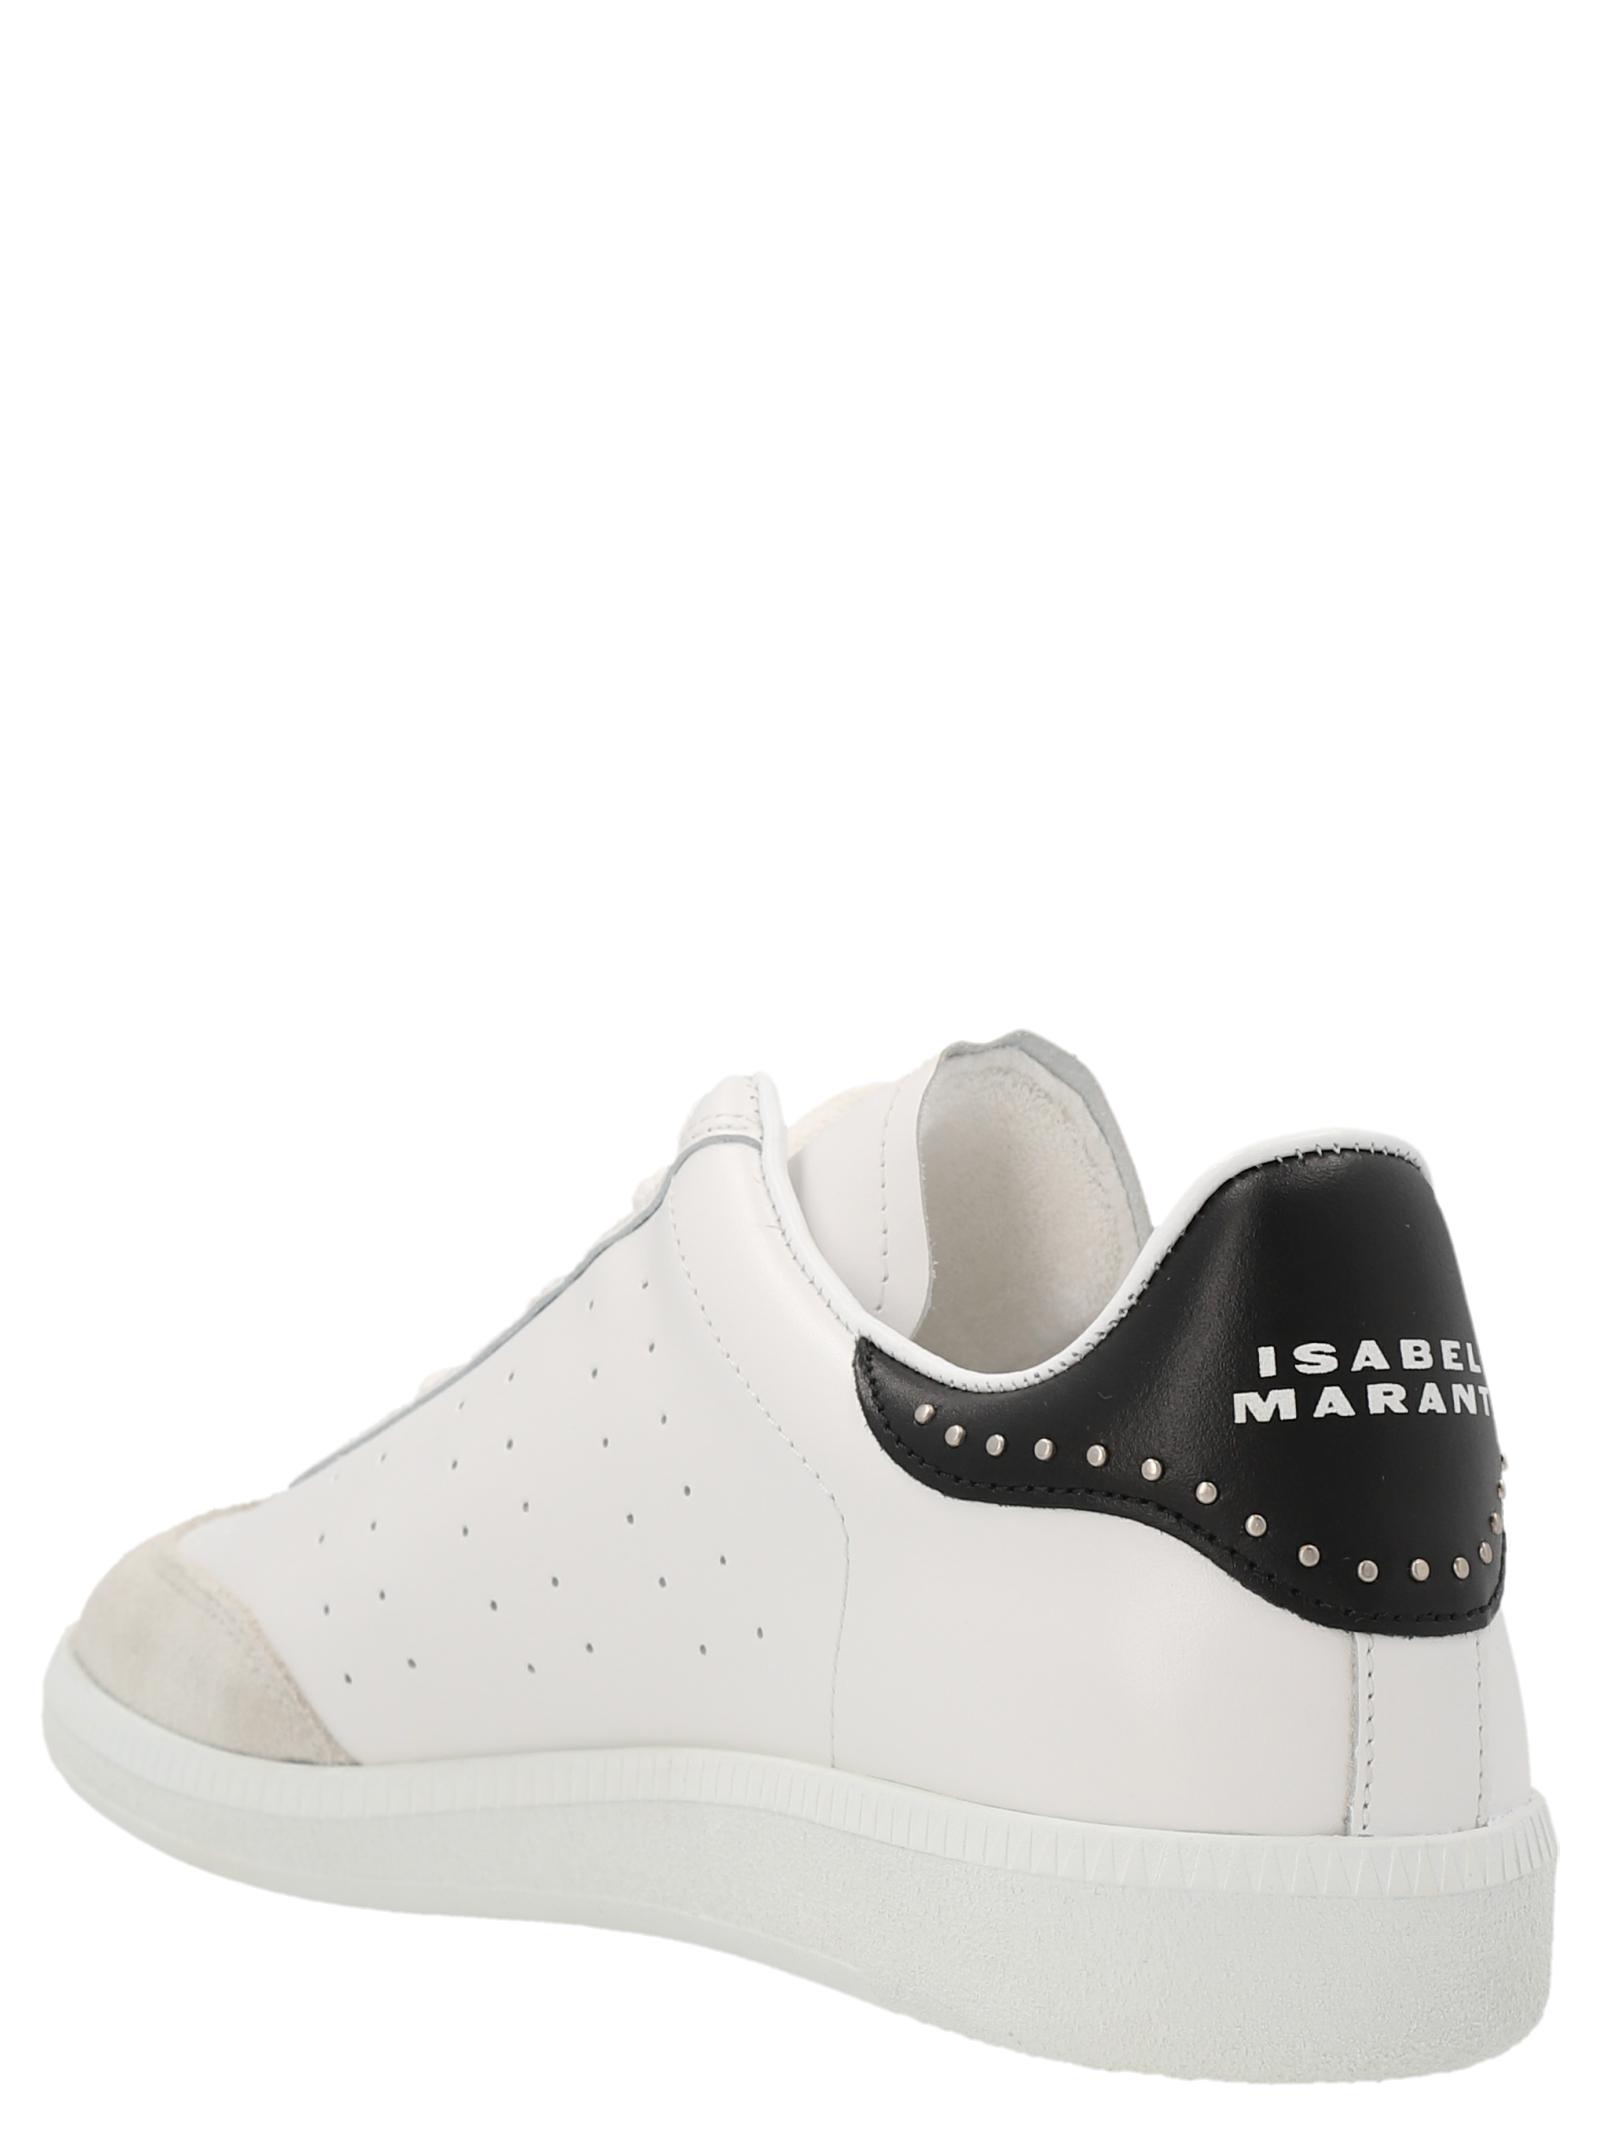 Marant Sneakers White |